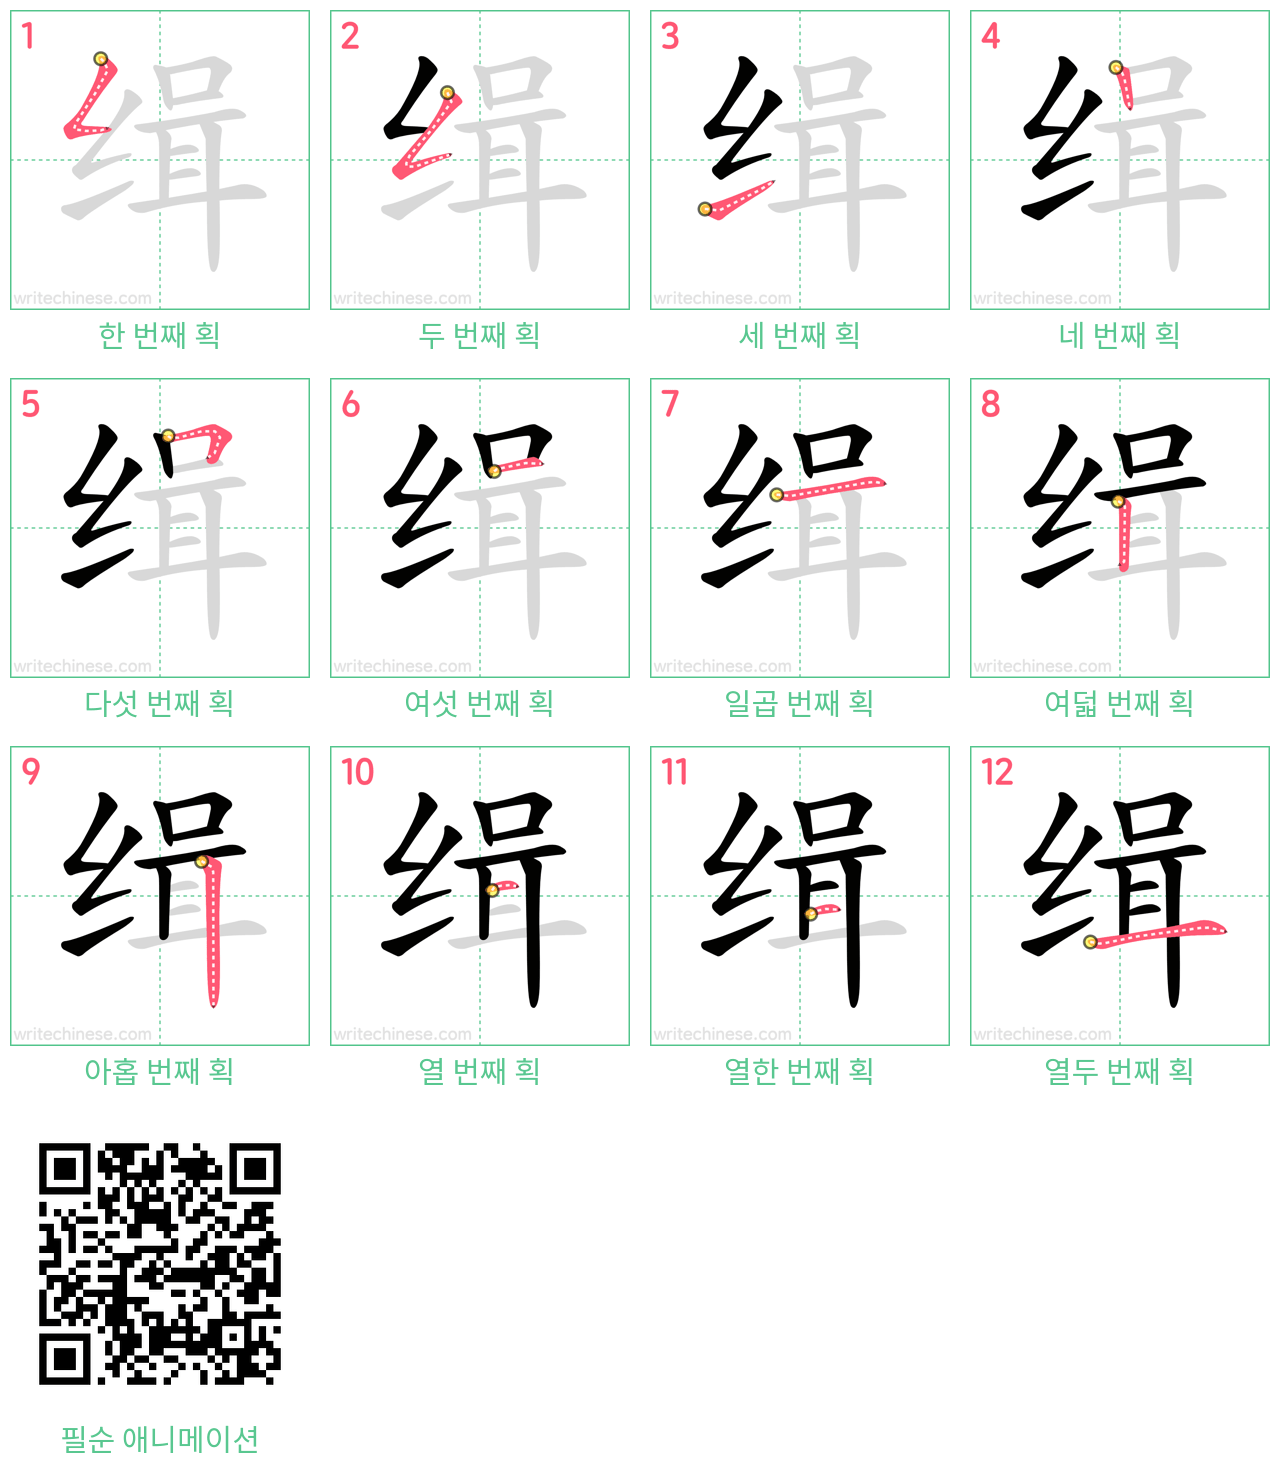 缉 step-by-step stroke order diagrams